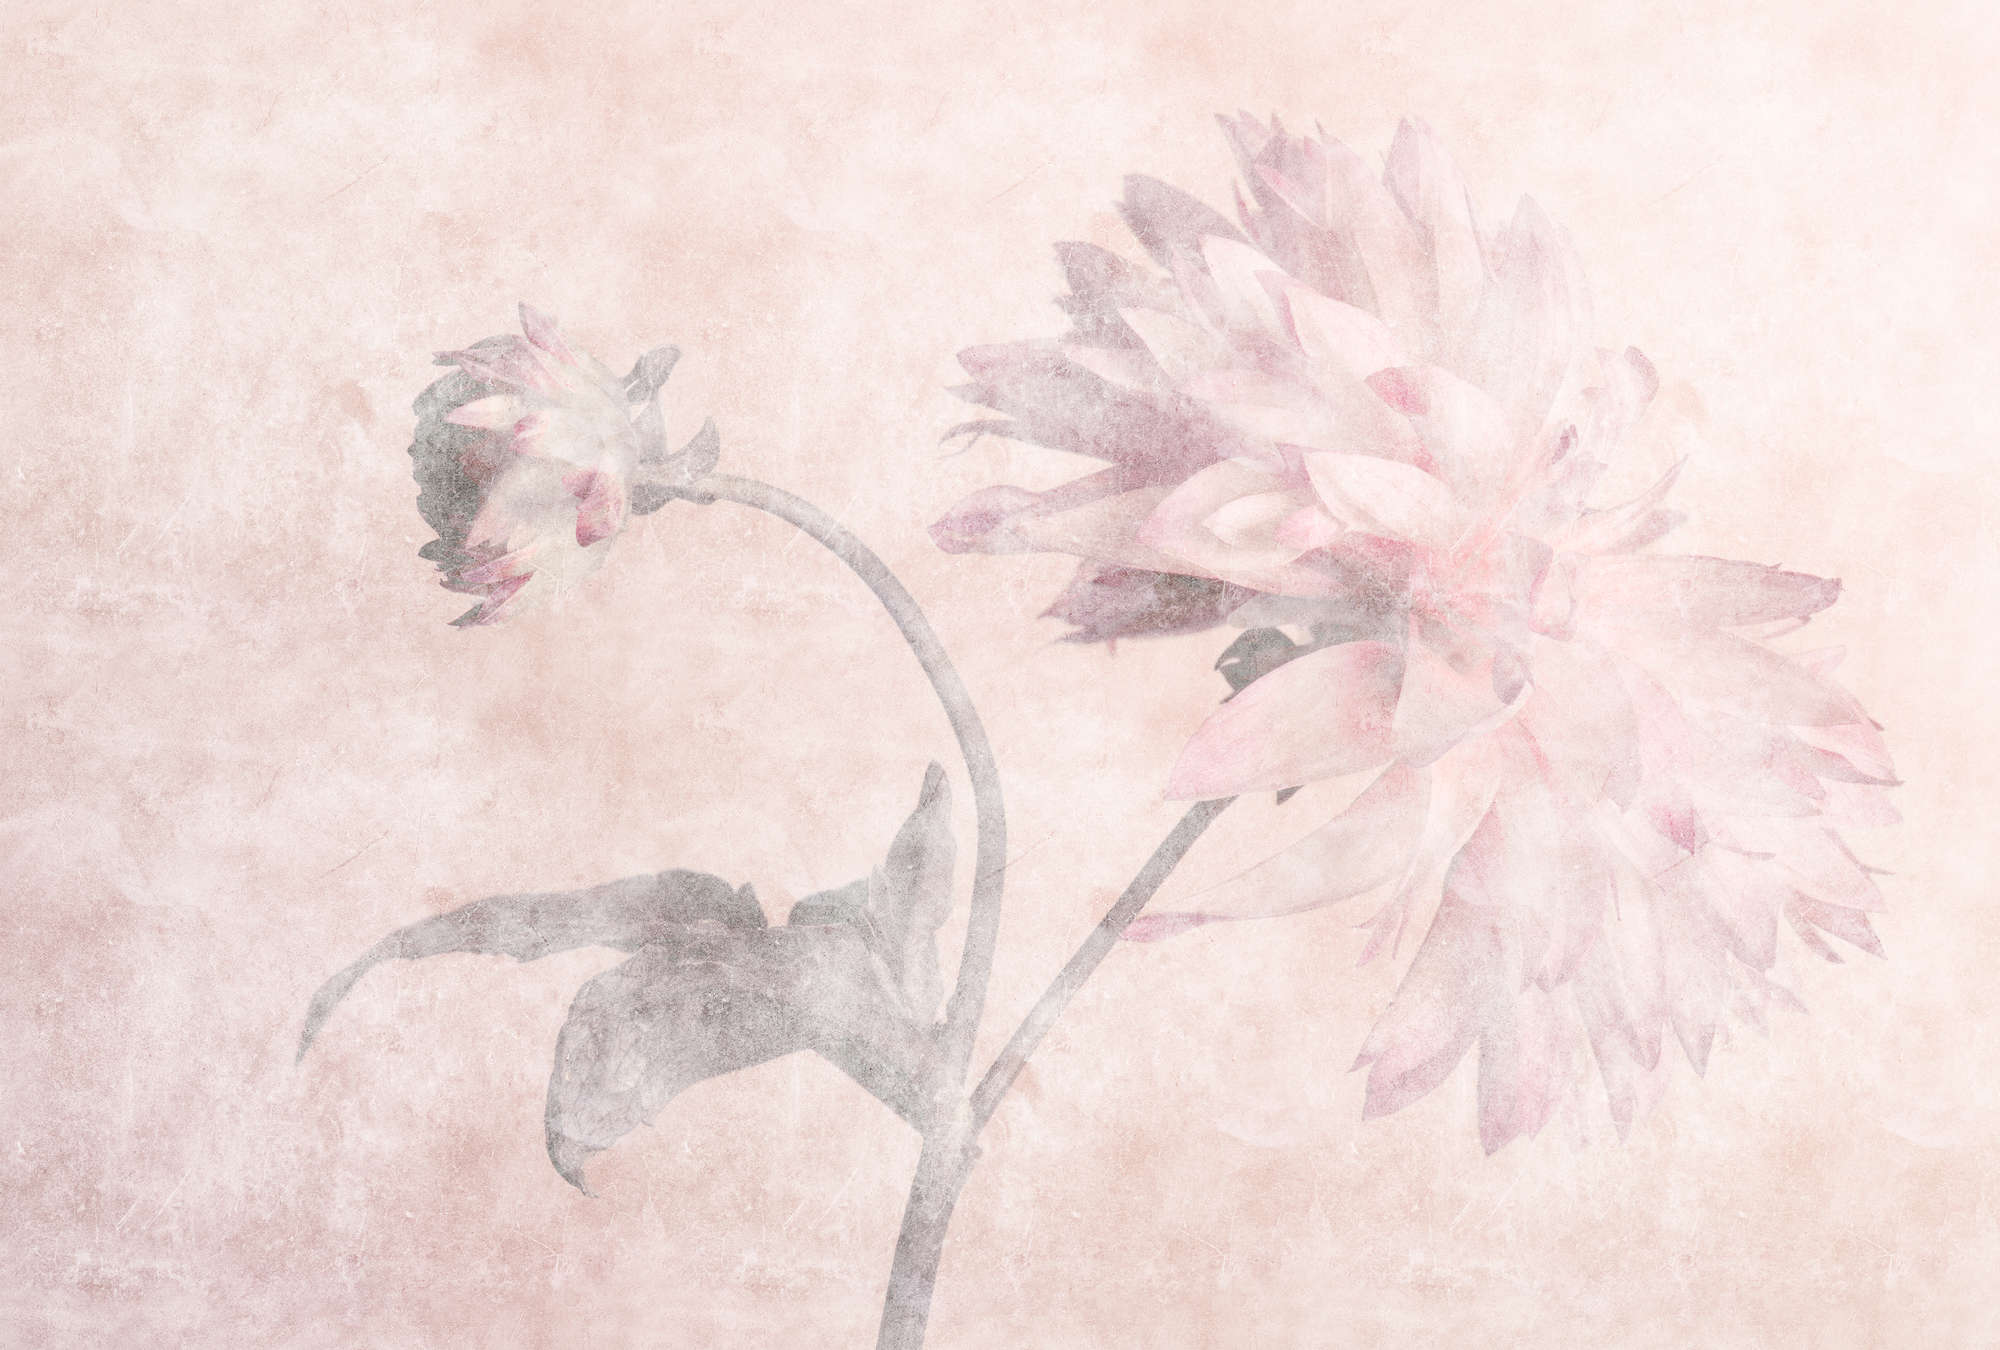             Morning Room 2 – Blumen Fototapete Dahlien im verblassten Stil
        